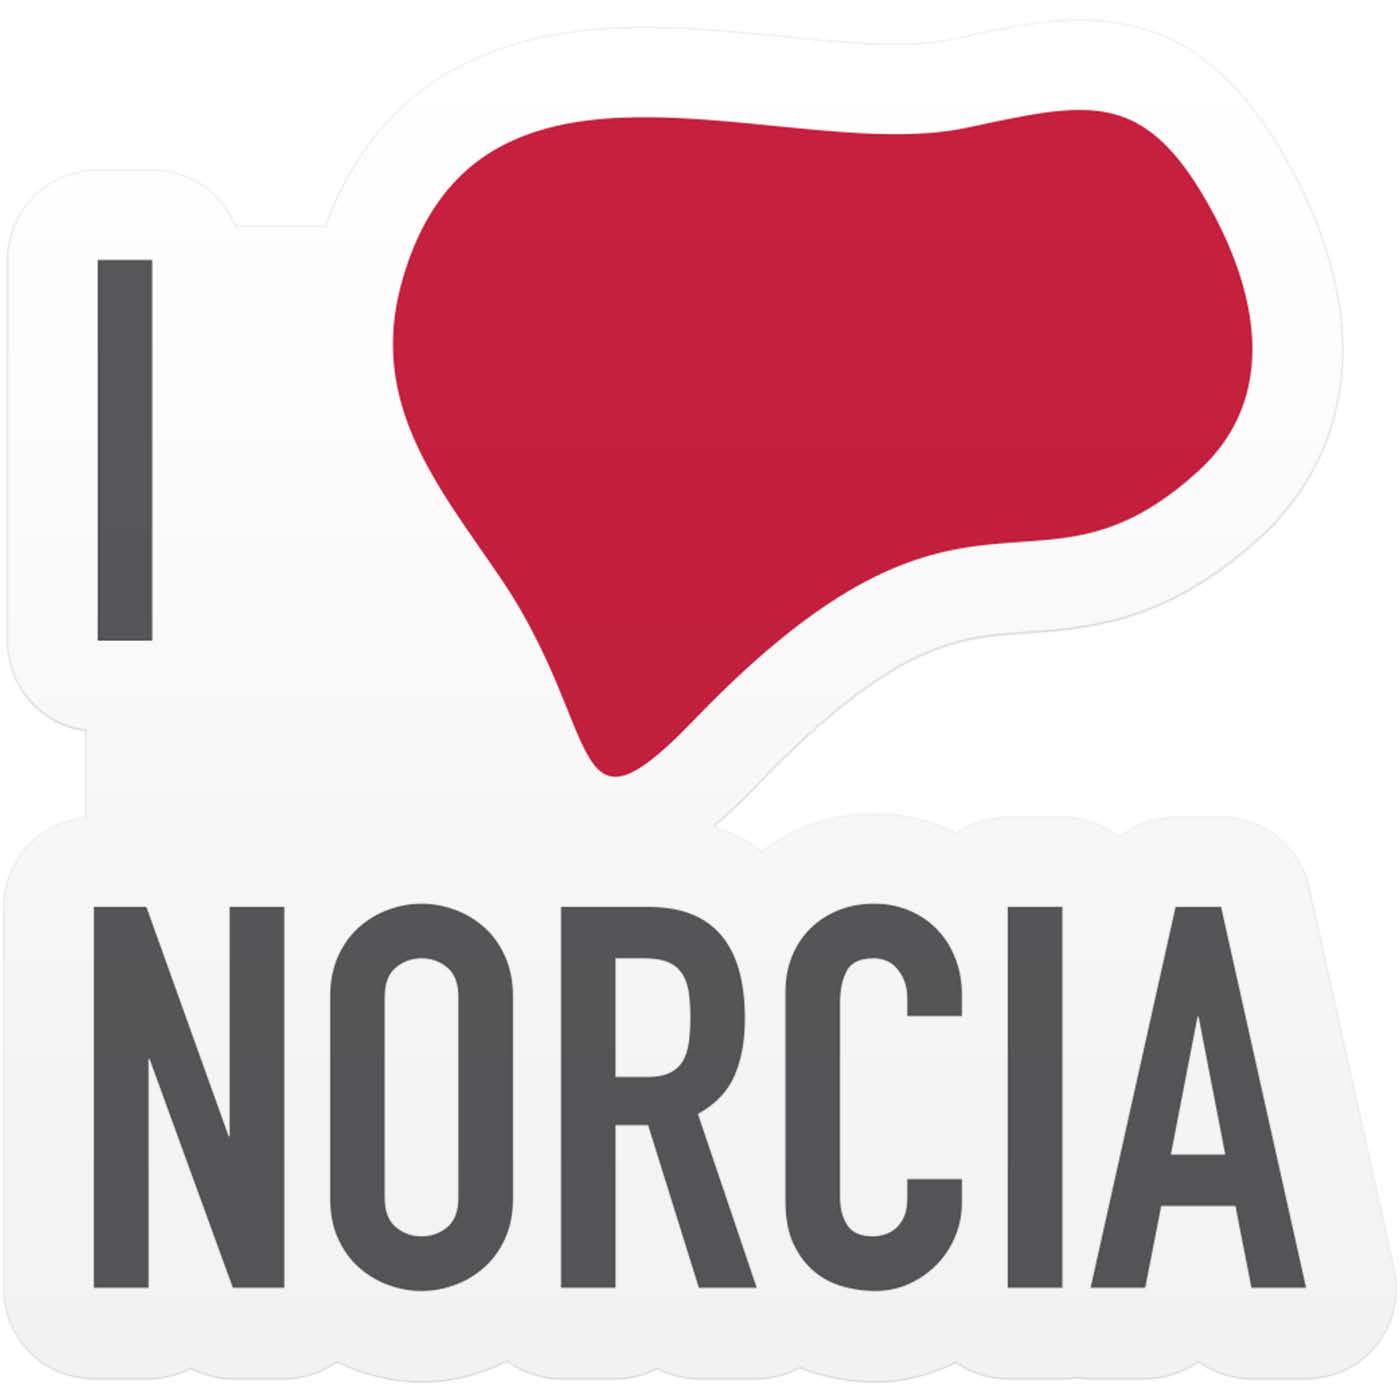 Il logo "I love Norcia"